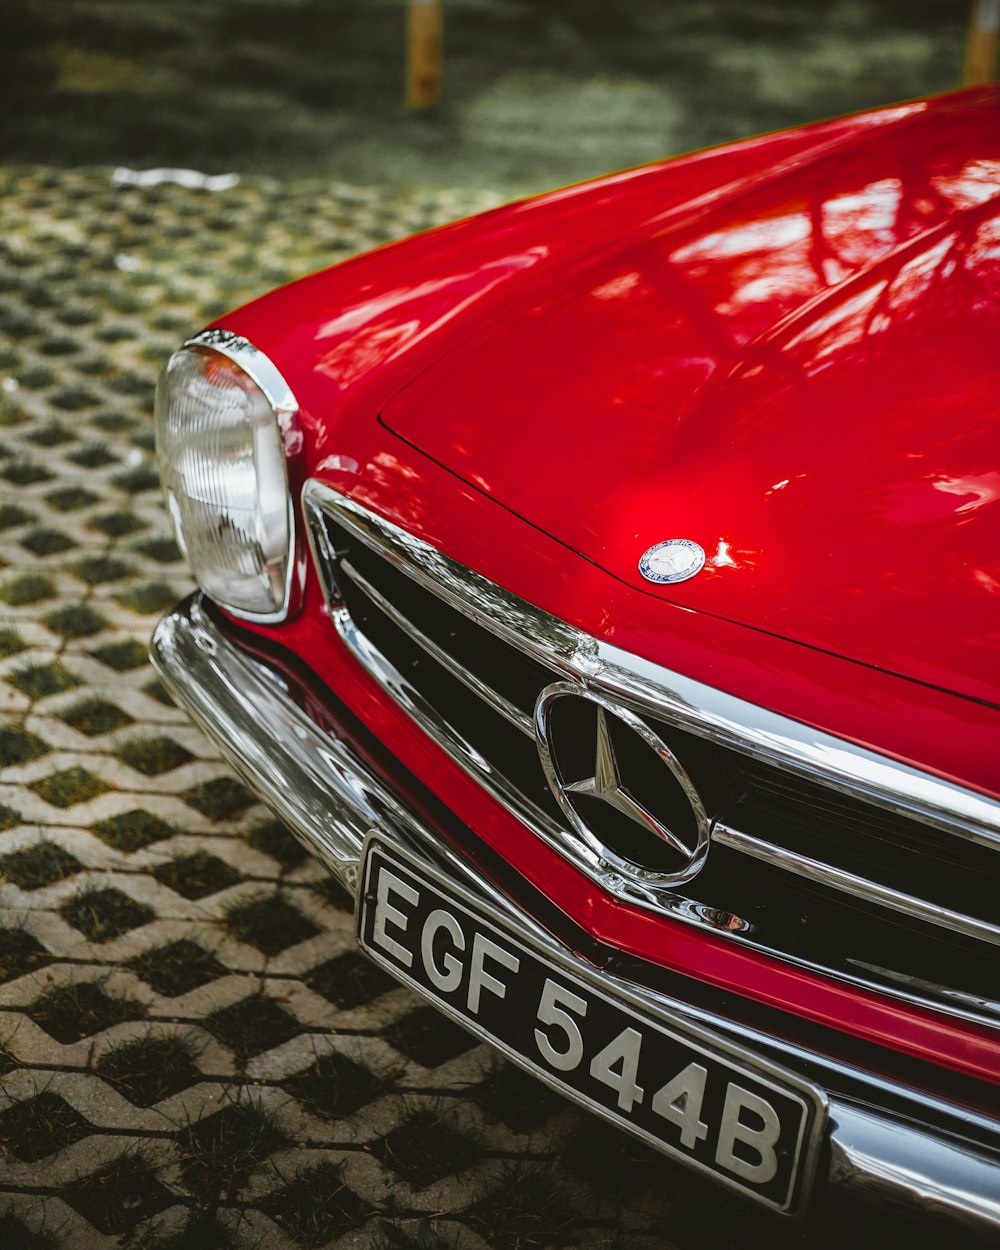 foto de foco raso do carro Mercedes-Benz vermelho